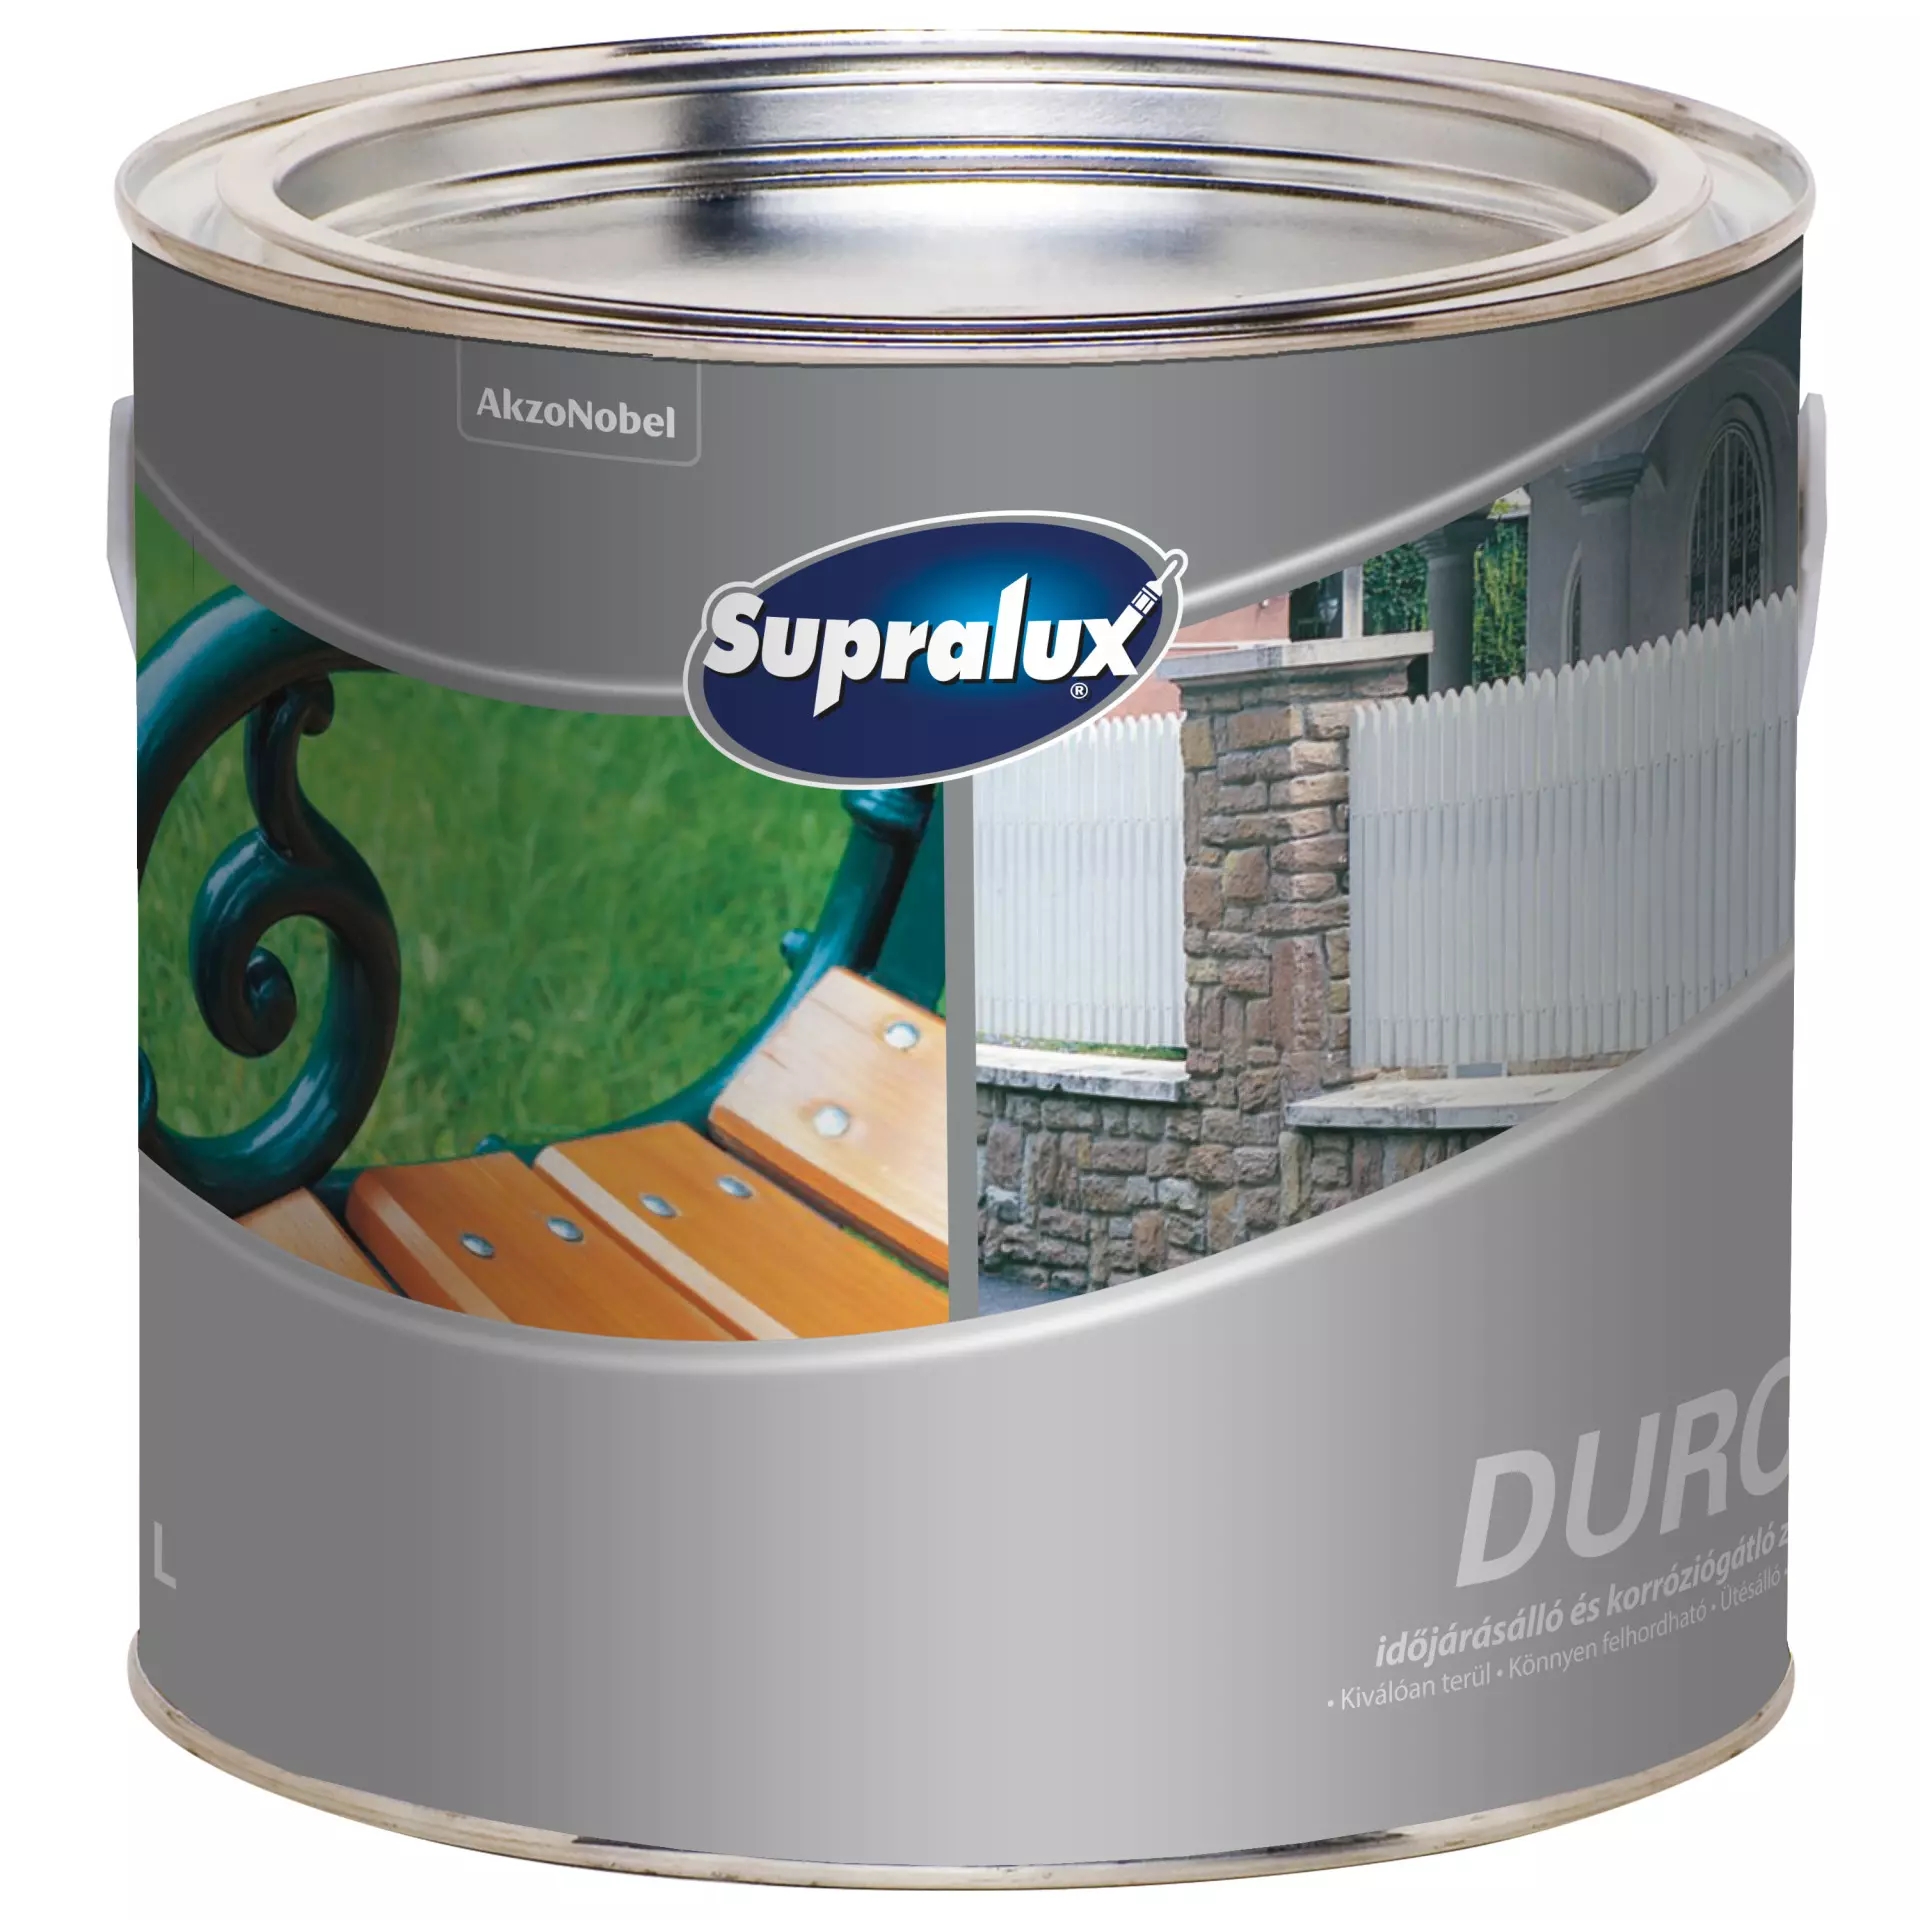 Supralux Durol időjárásálló és korróziógátló zománc kék 2,5 l